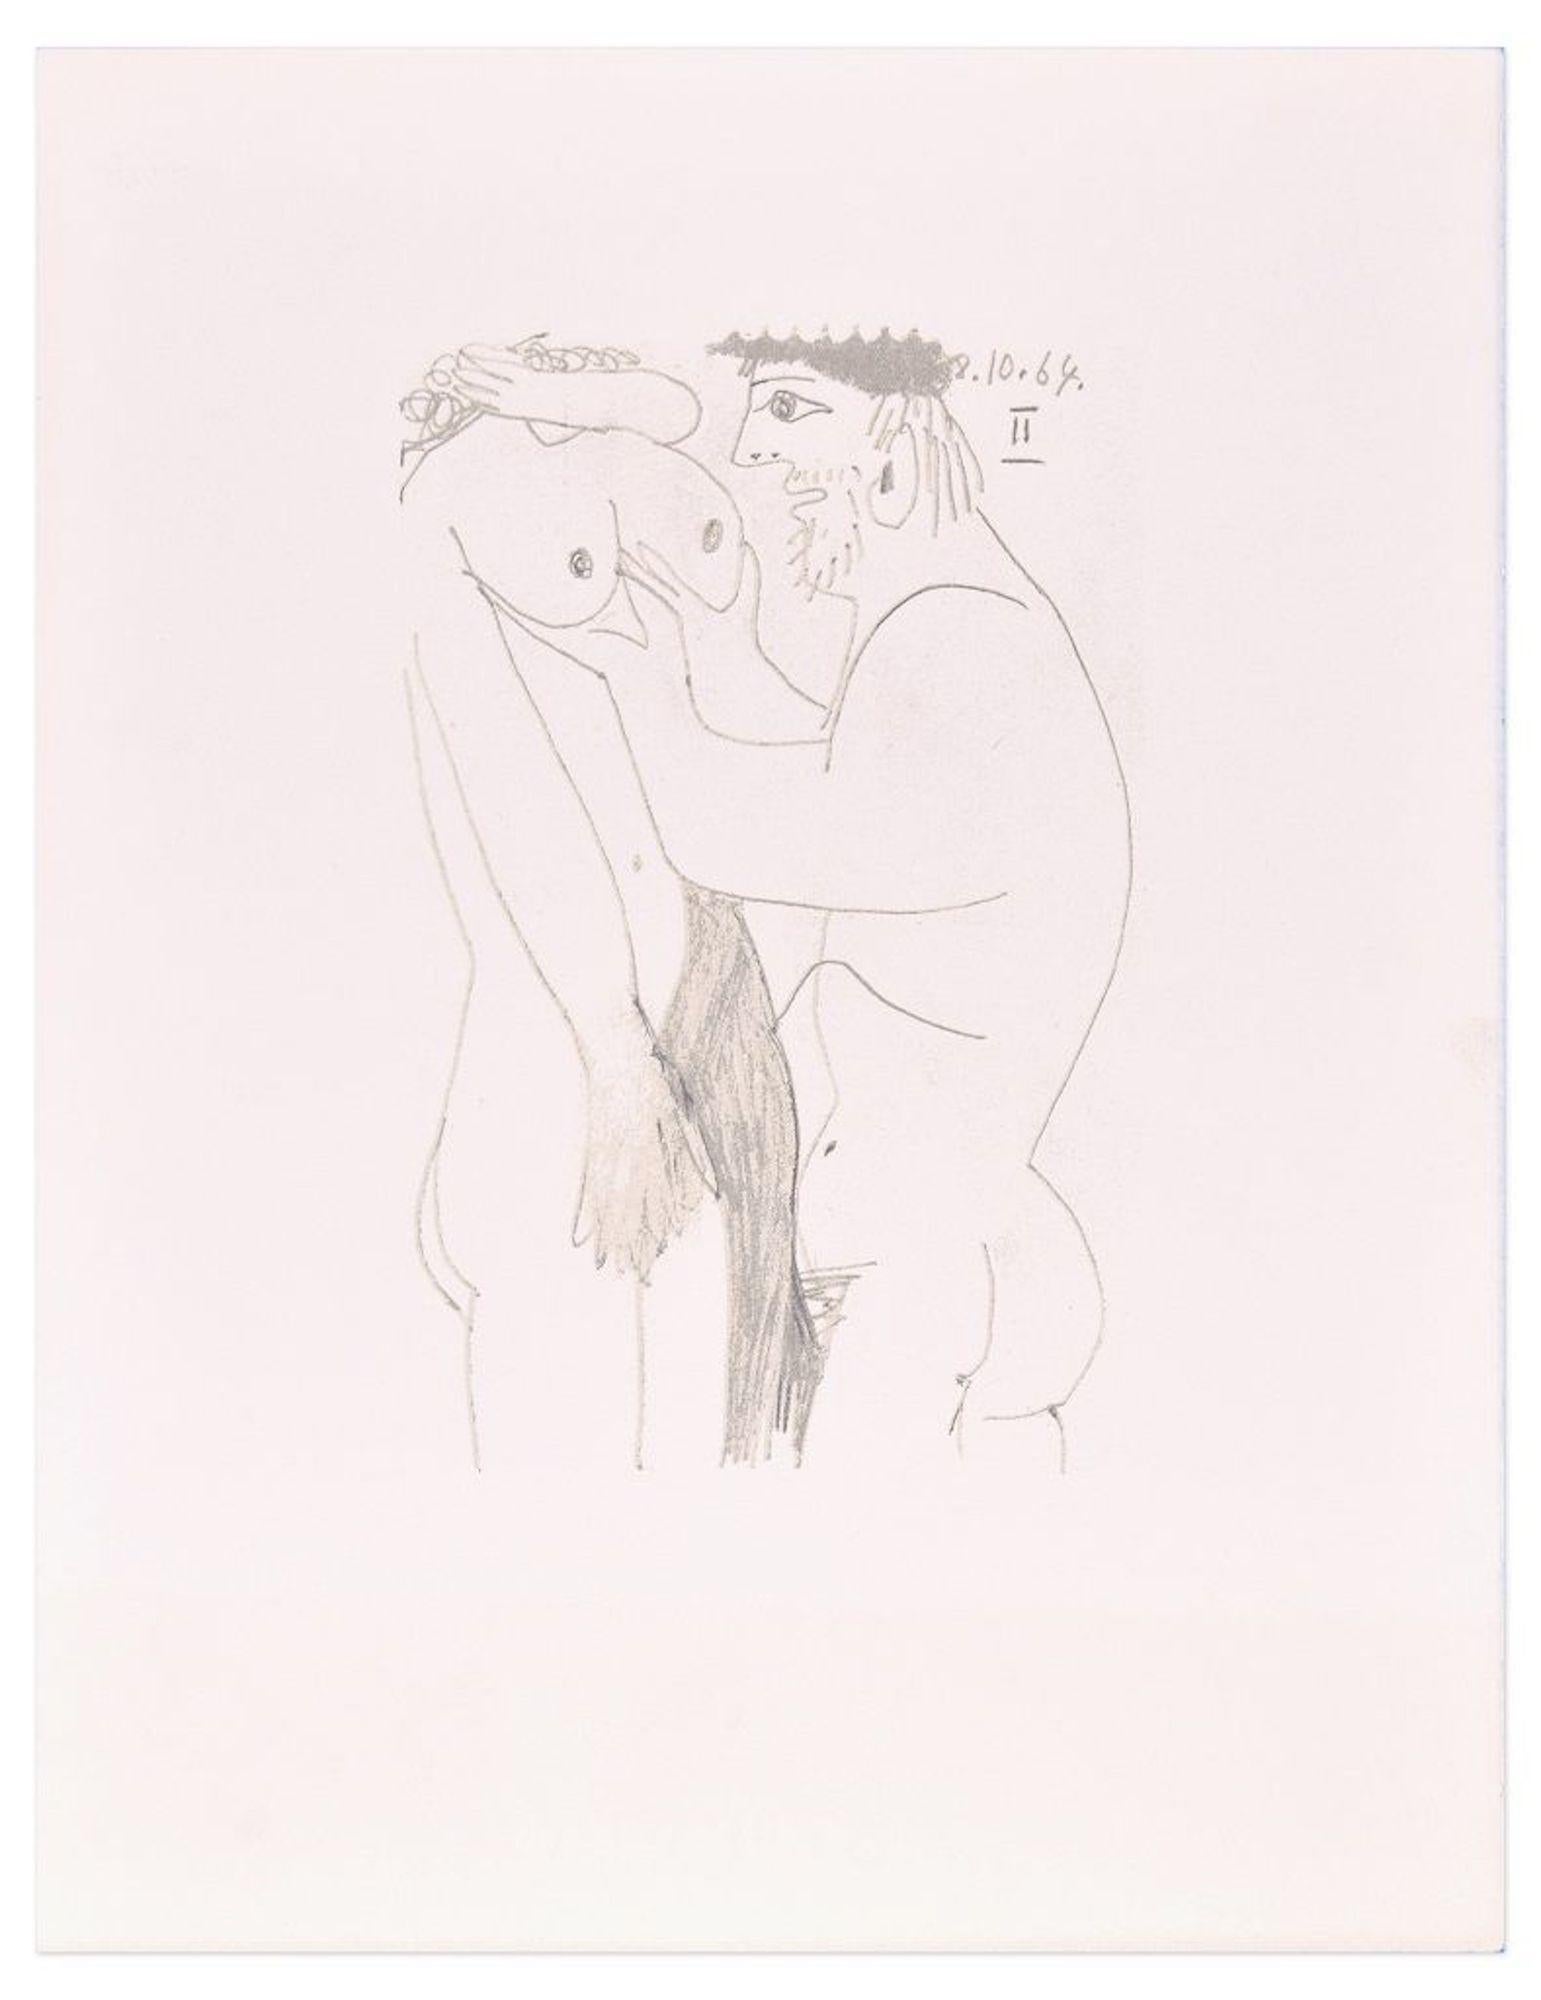 Le Goût du Bonheur - 8.10.64 II - Lithograph After P. Picasso